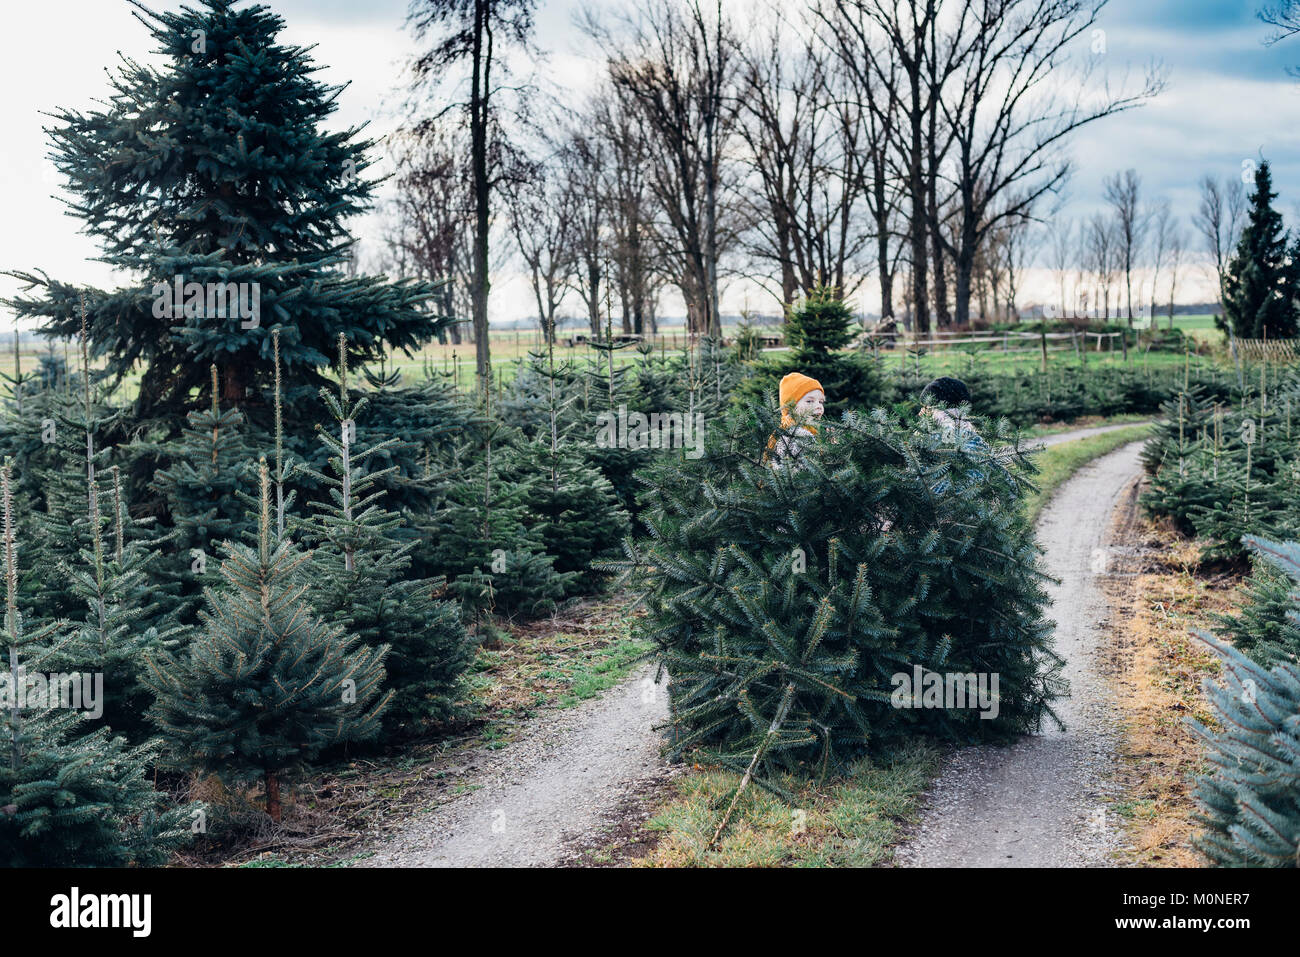 Tannenbaum, Weihnachtsbaumplantage, Sachsen, Deutschland, weihnachten, Weihnachtsbaum Foto Stock